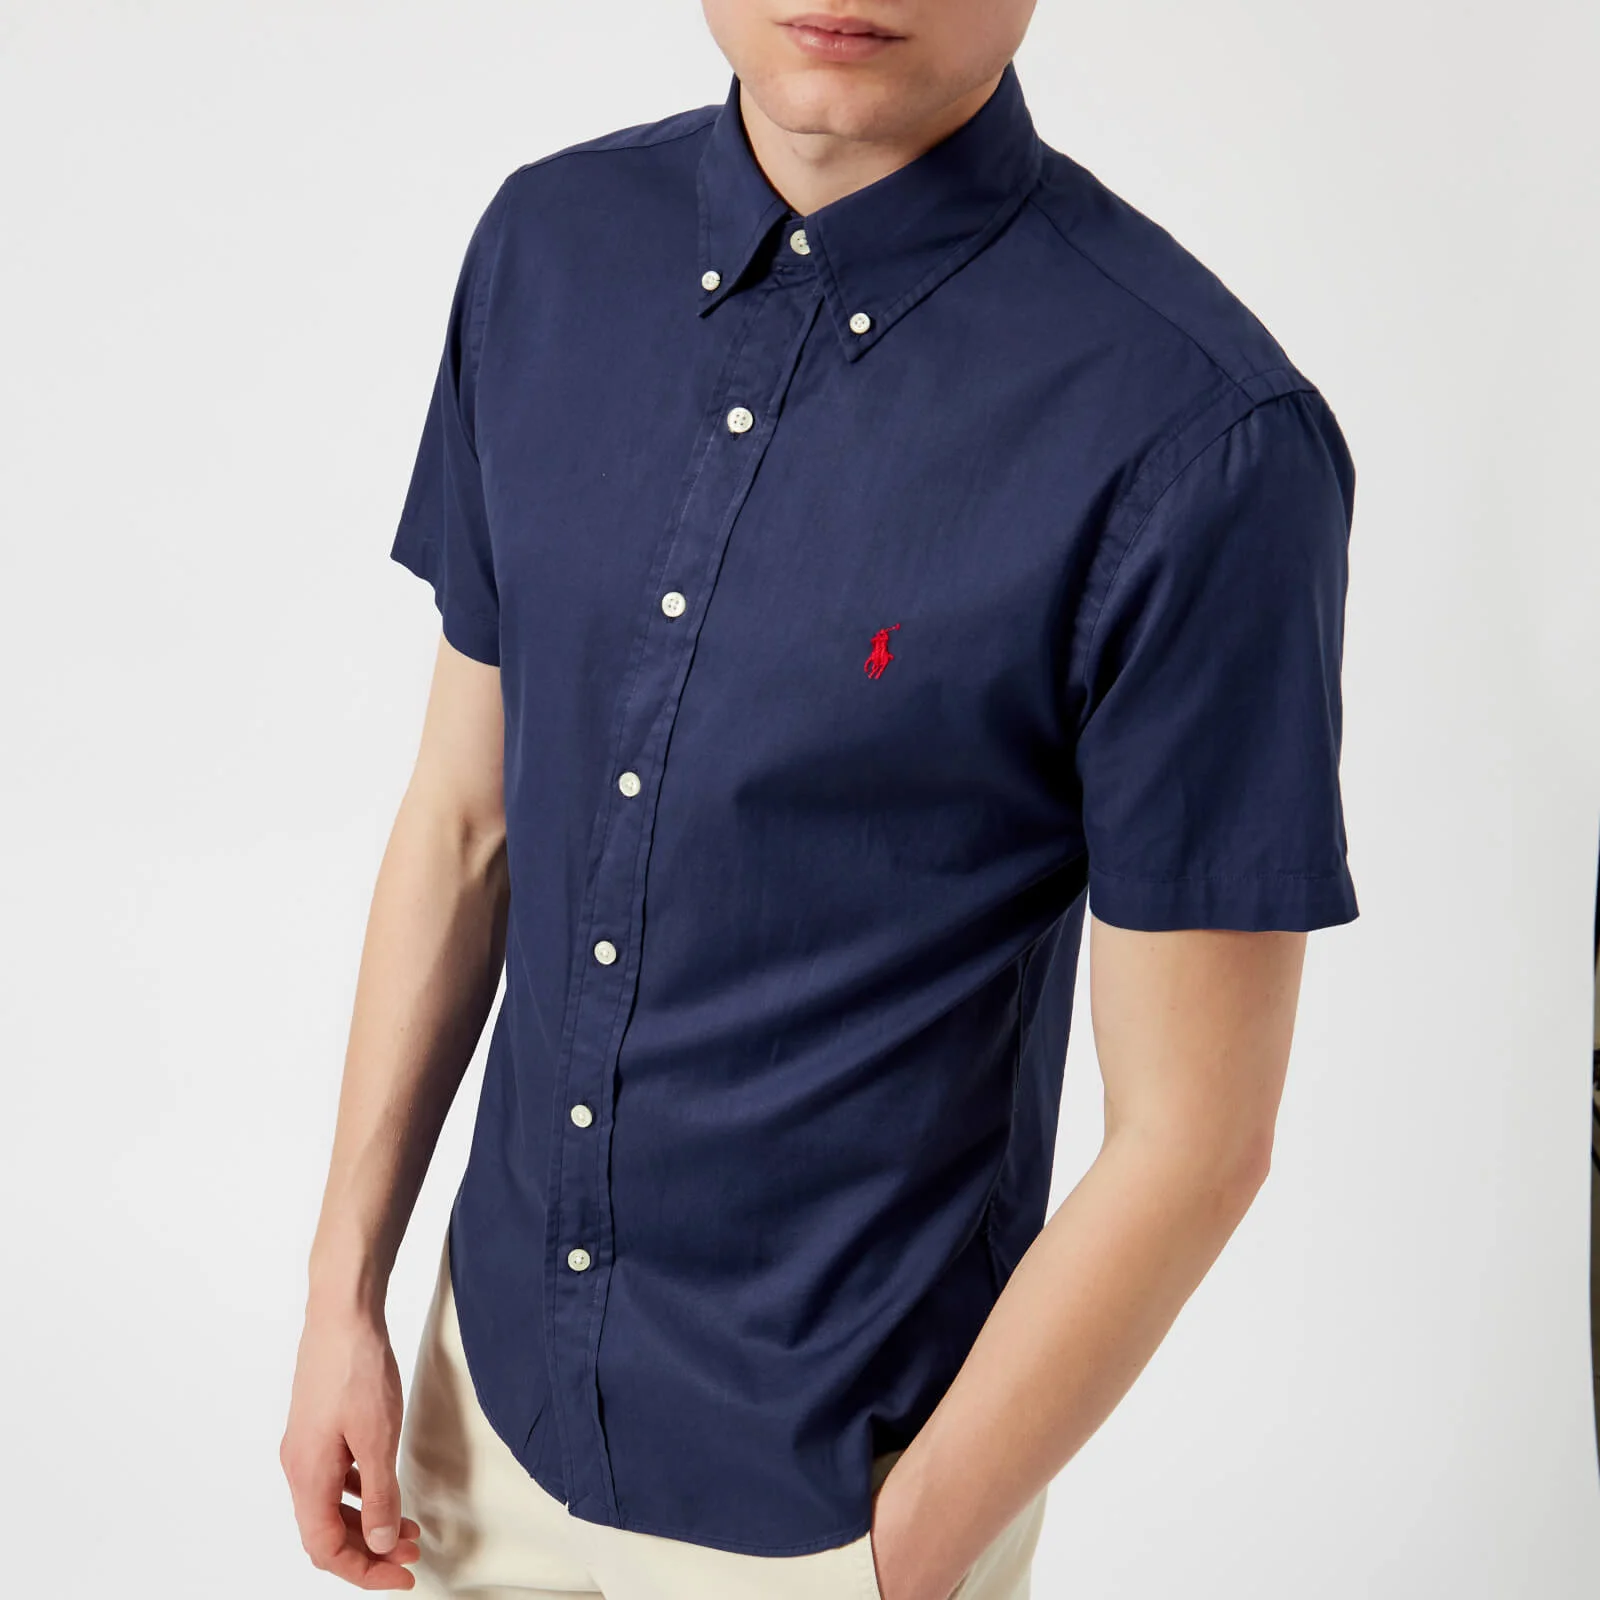 Polo Ralph Lauren Men's Short Sleeve Chino Shirt - New Classic Navy Image 1